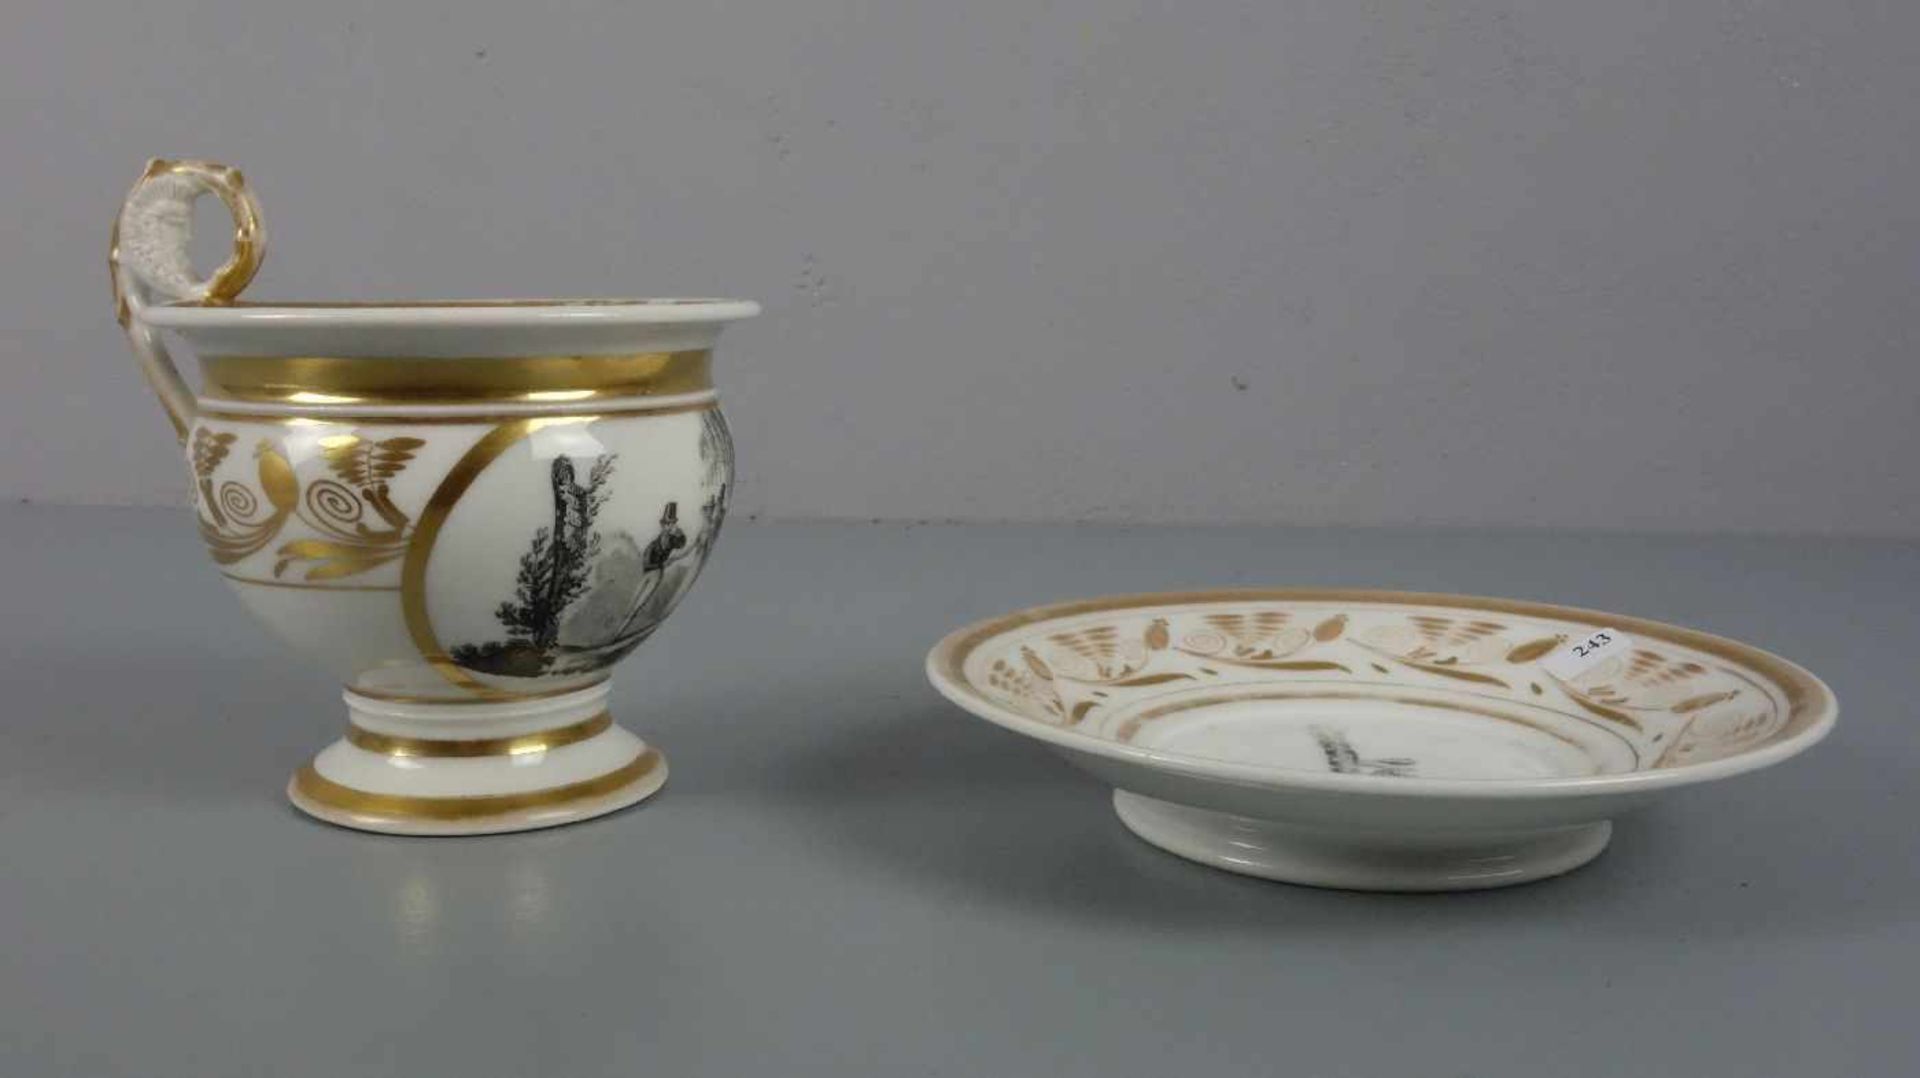 GROSSE EMPIRE-TASSE / empire cup, um 1800, Porzellan, ungemarkt, polychrom und gold staffiert. Tasse - Image 2 of 5